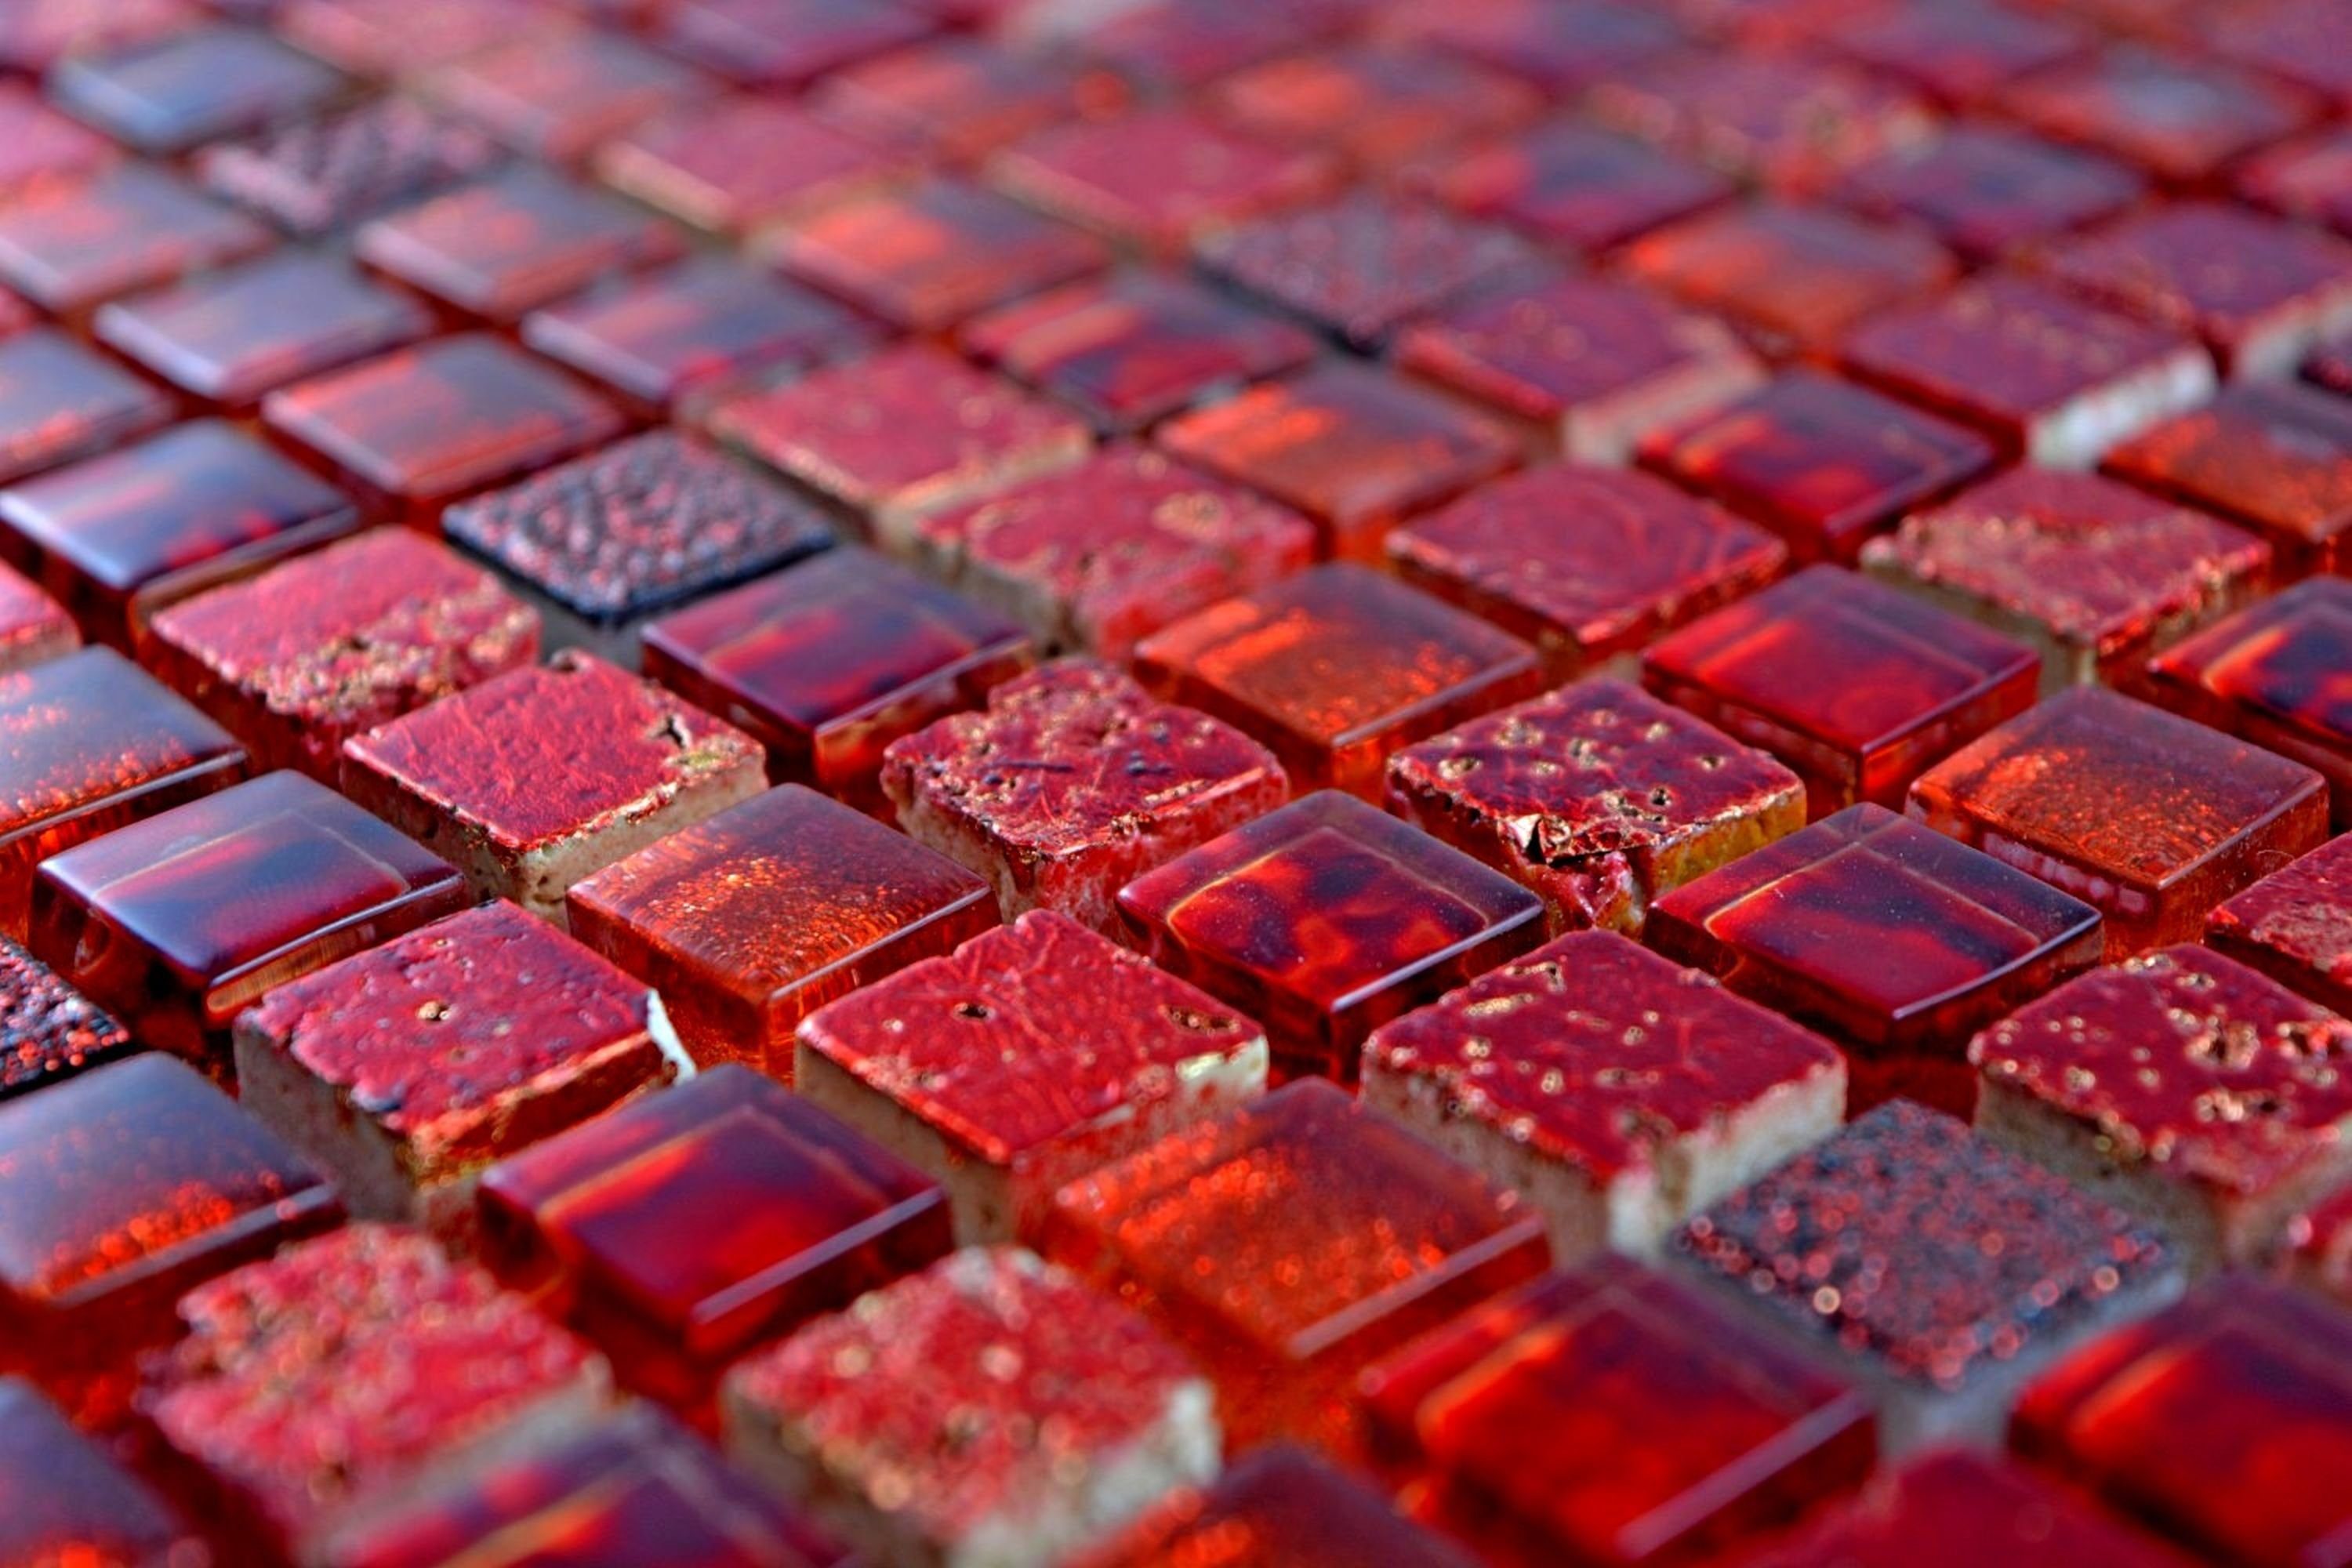 Mosani Mosaikfliesen Glasmosaik Mosaikfliese BAD WC Resin rot dunkelrot